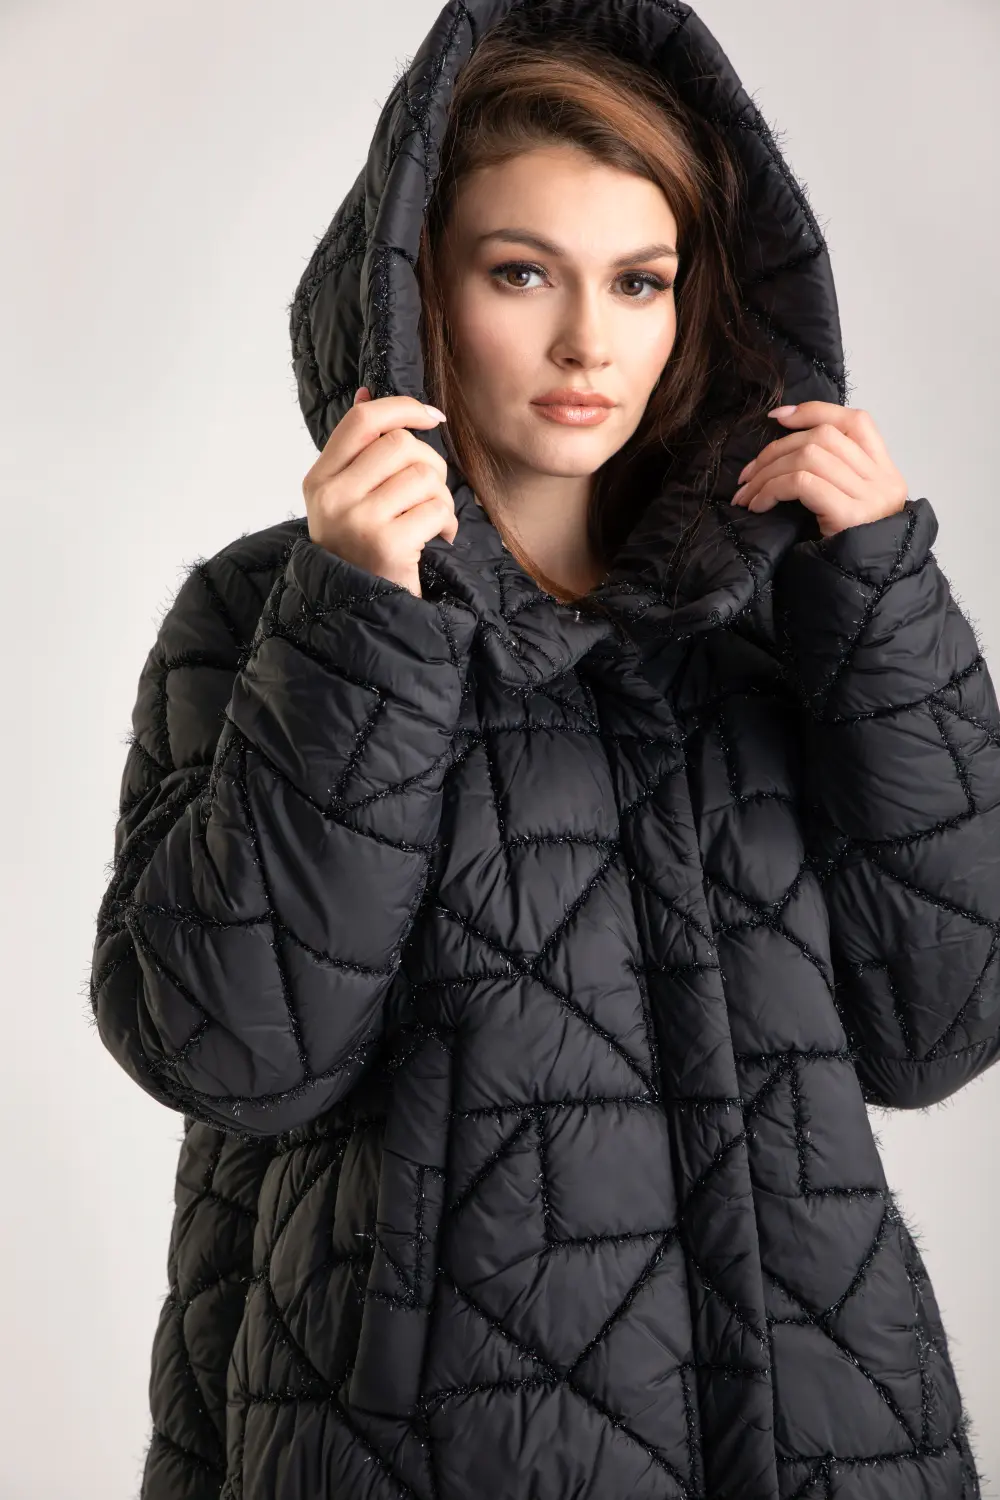 czarna kurtka zimowa z kapturem czarna haftowana pikowana kurtka puchowa fason oversize polskiej marki Vito Vergelis